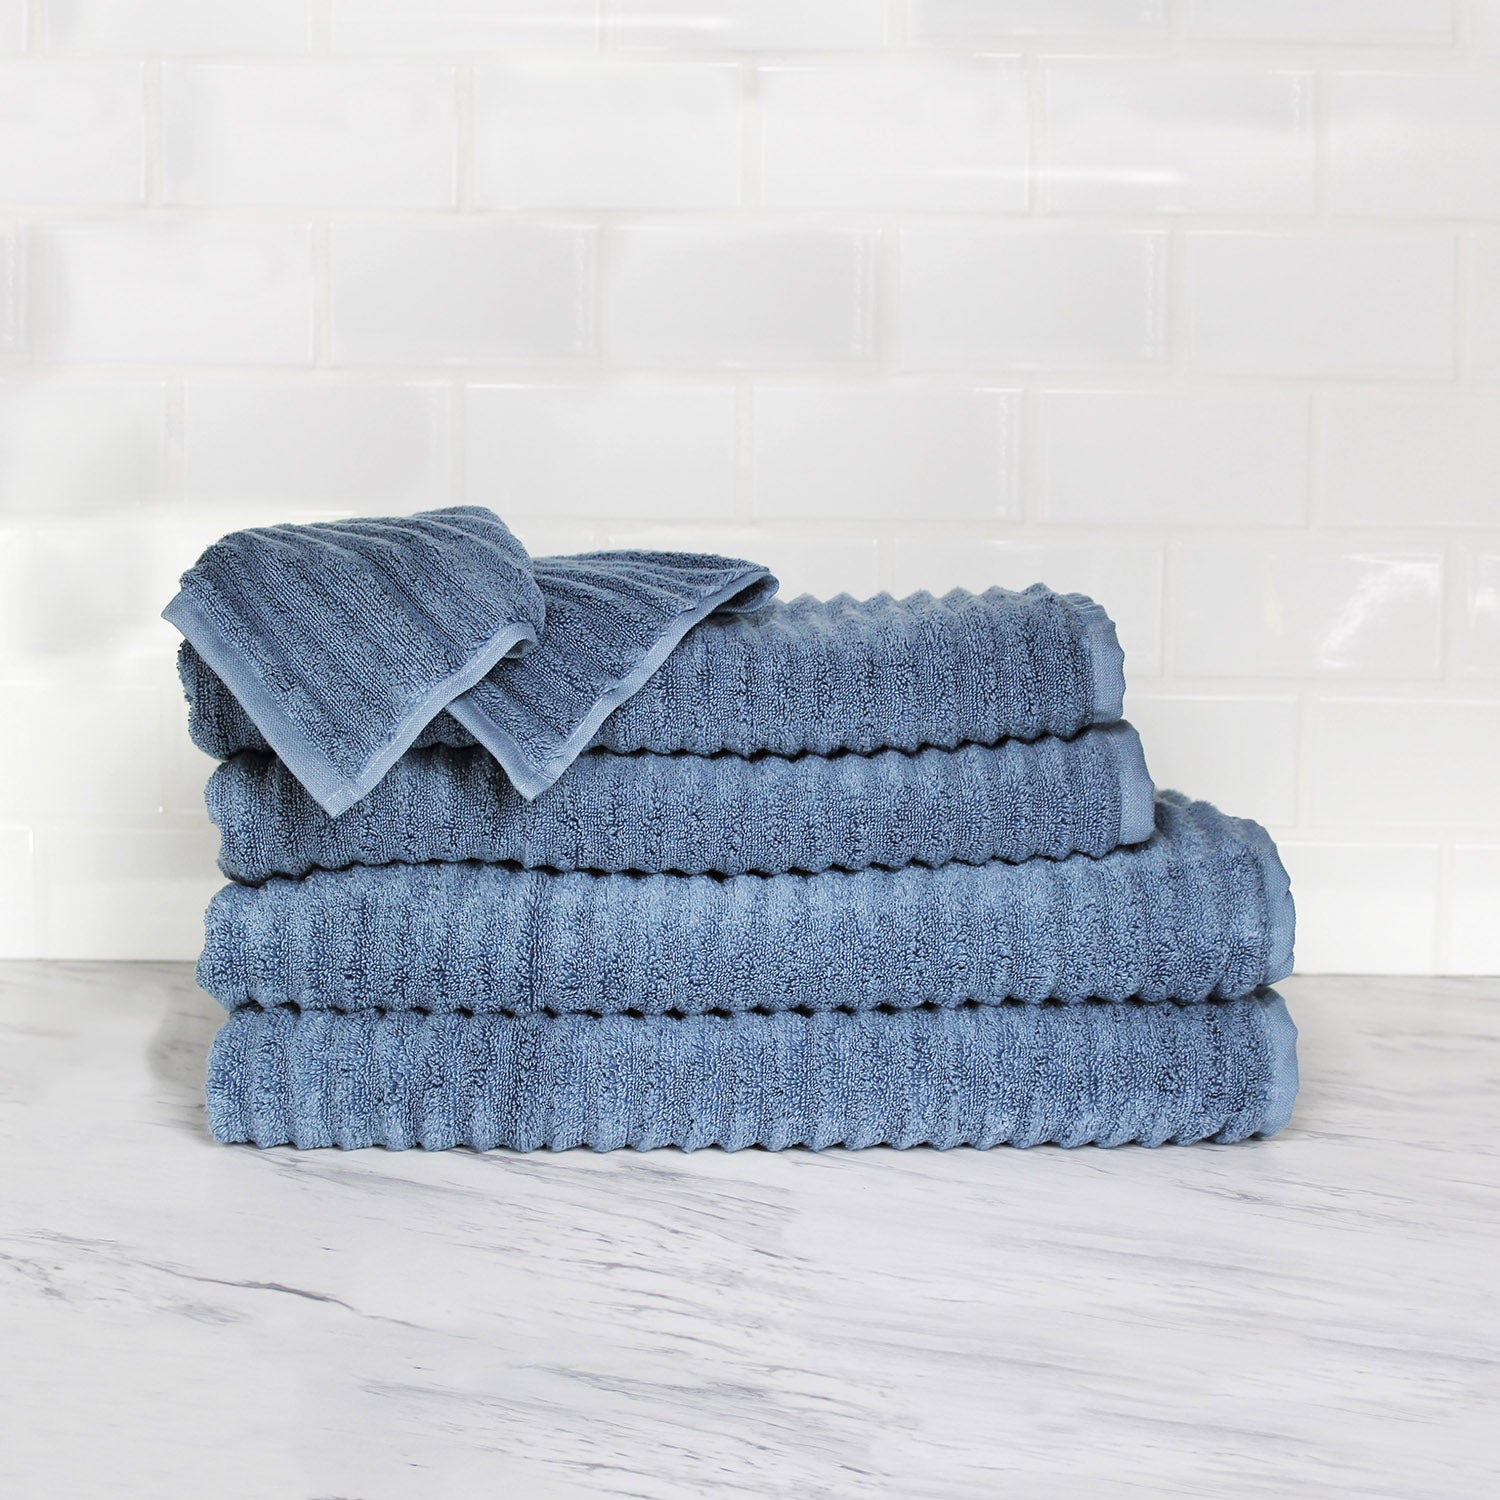 Turkish Towels Optimum 6-Piece Towel Set